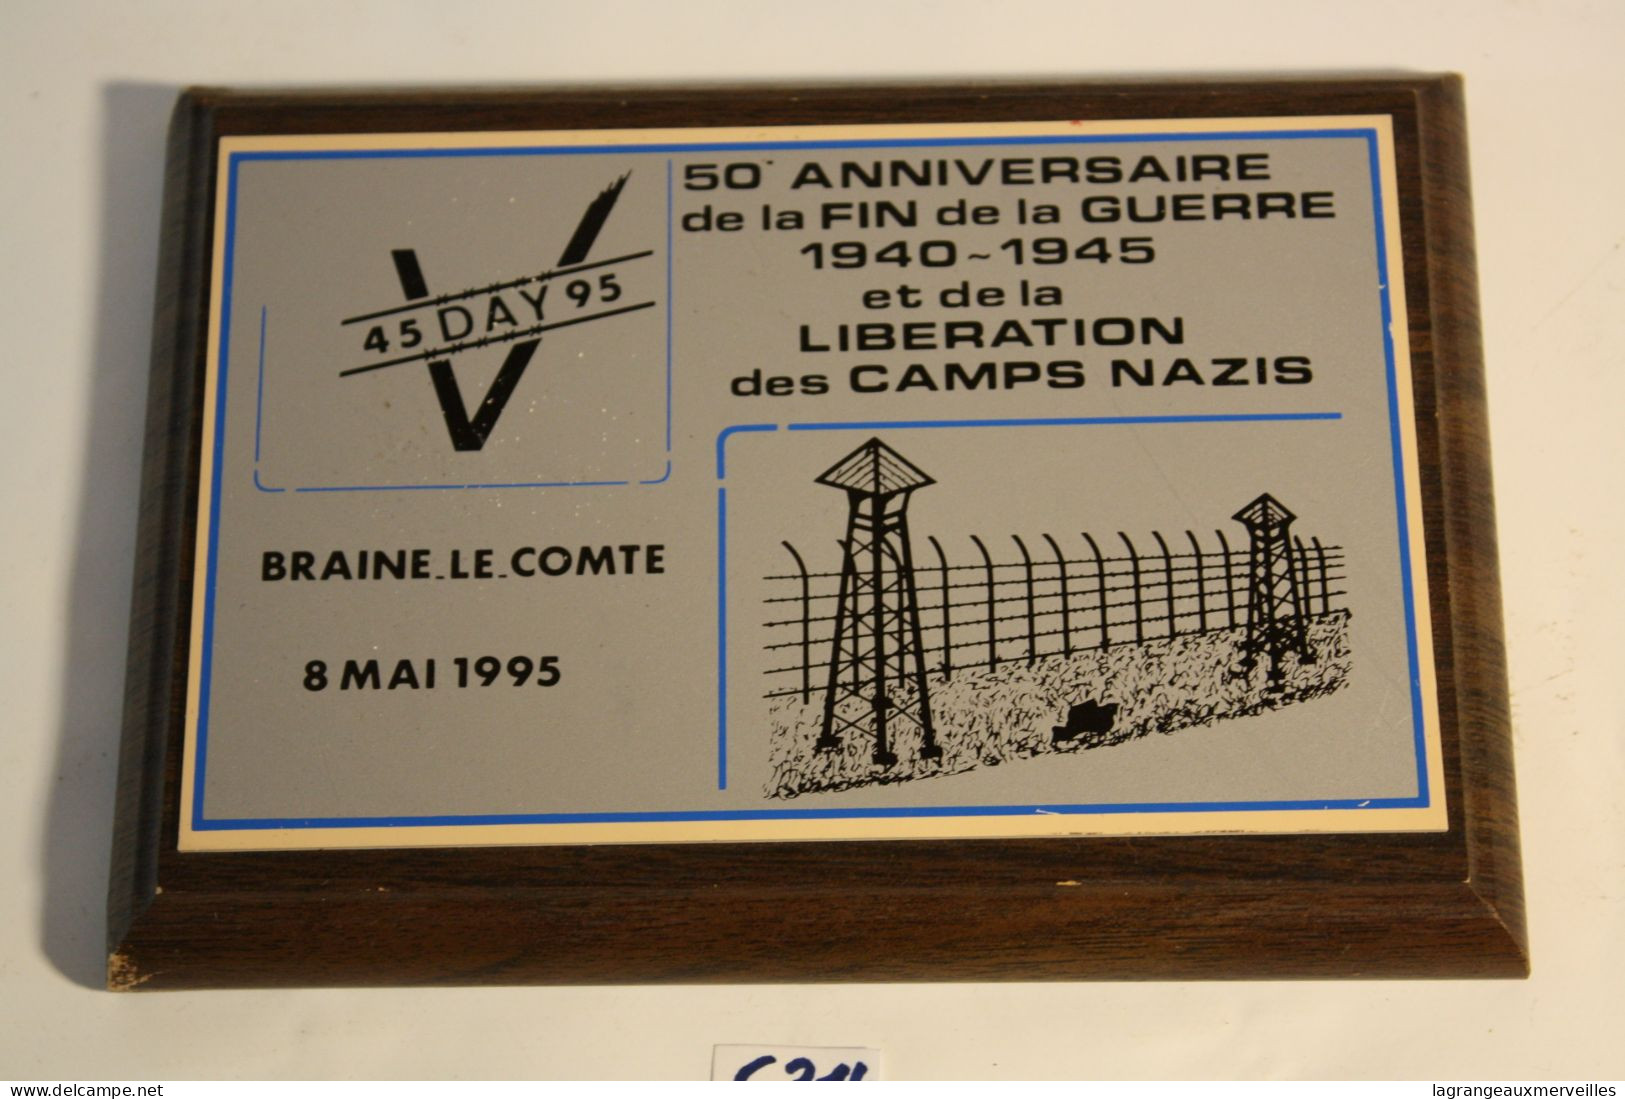 C314 Souvenir Braine Le Comte - 50 ème Anniversaire - Libération Des Camps Nazis 1995 - Obj. 'Remember Of'